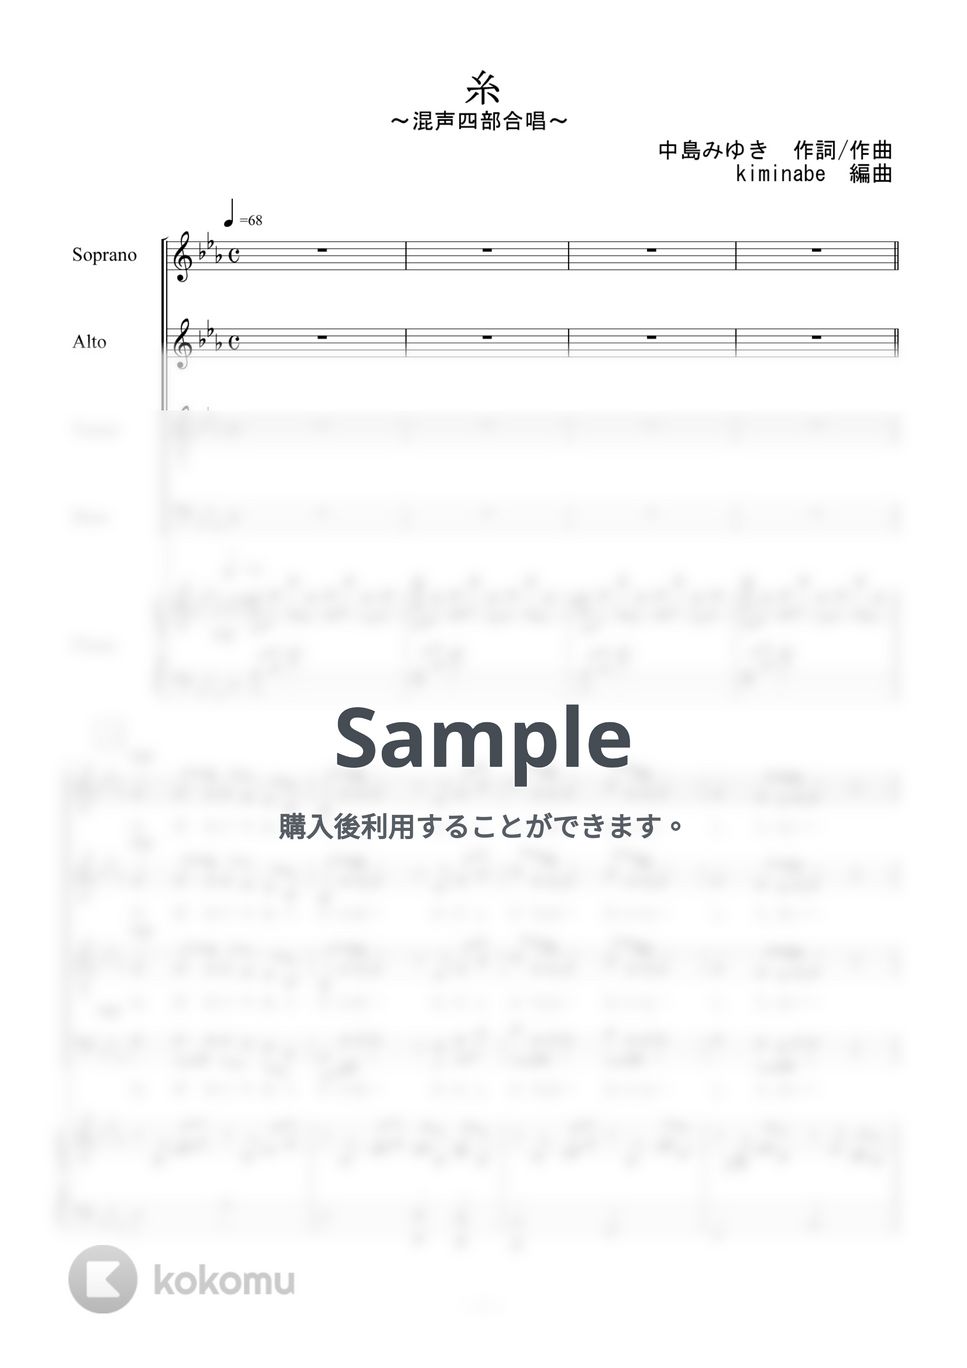 中島みゆき - 糸 (混声四部合唱) by kiminabe